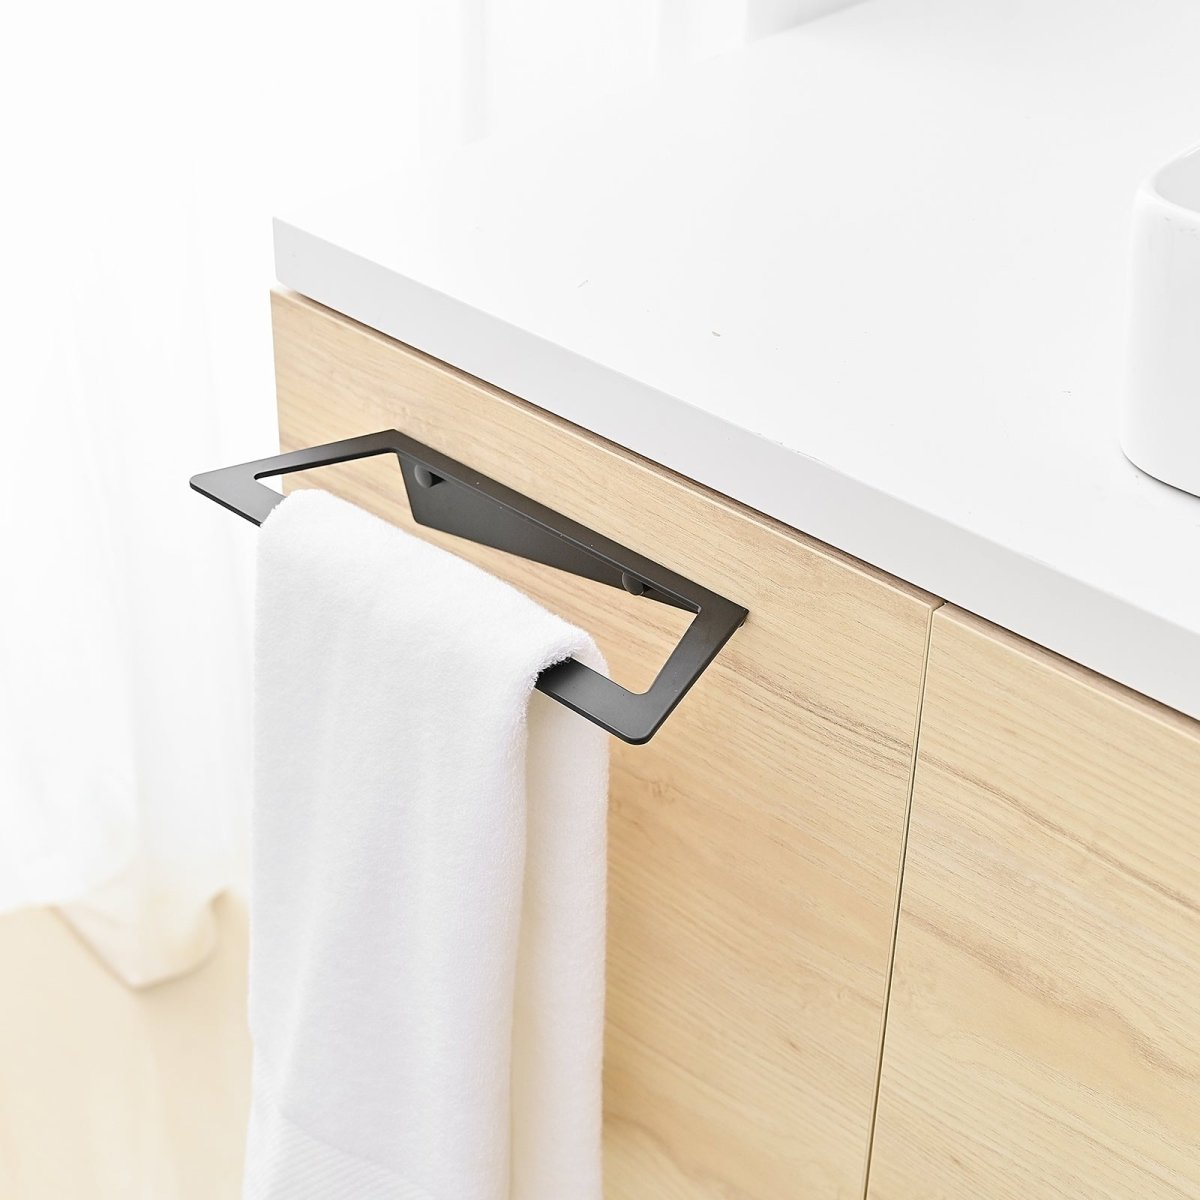 4 PCS Towel Bar Towel Hook Toilet Paper Holder Set Black - buyfaucet.com